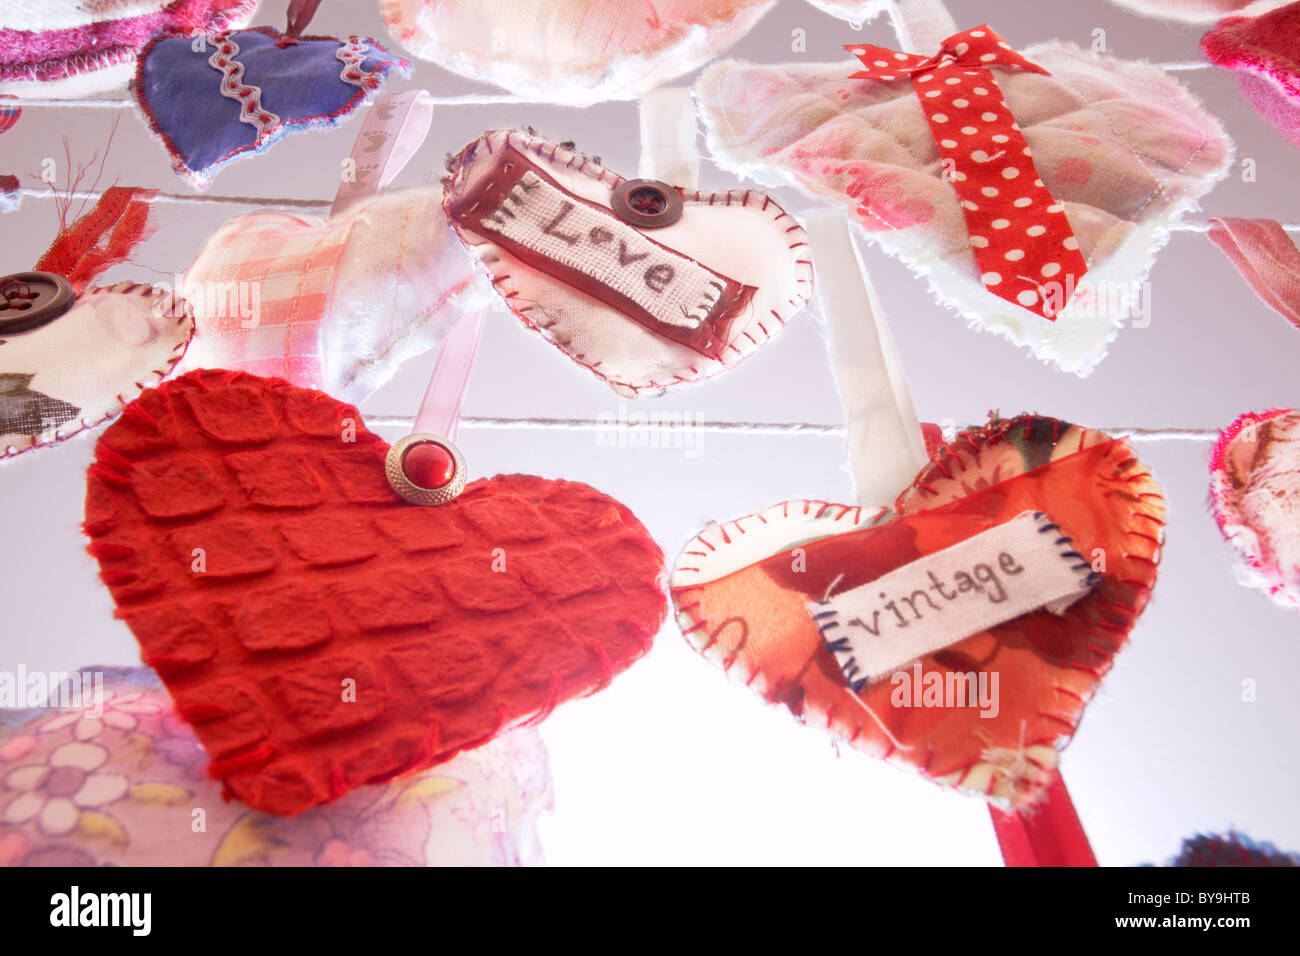 Handmade valentines hearts Stock Photo